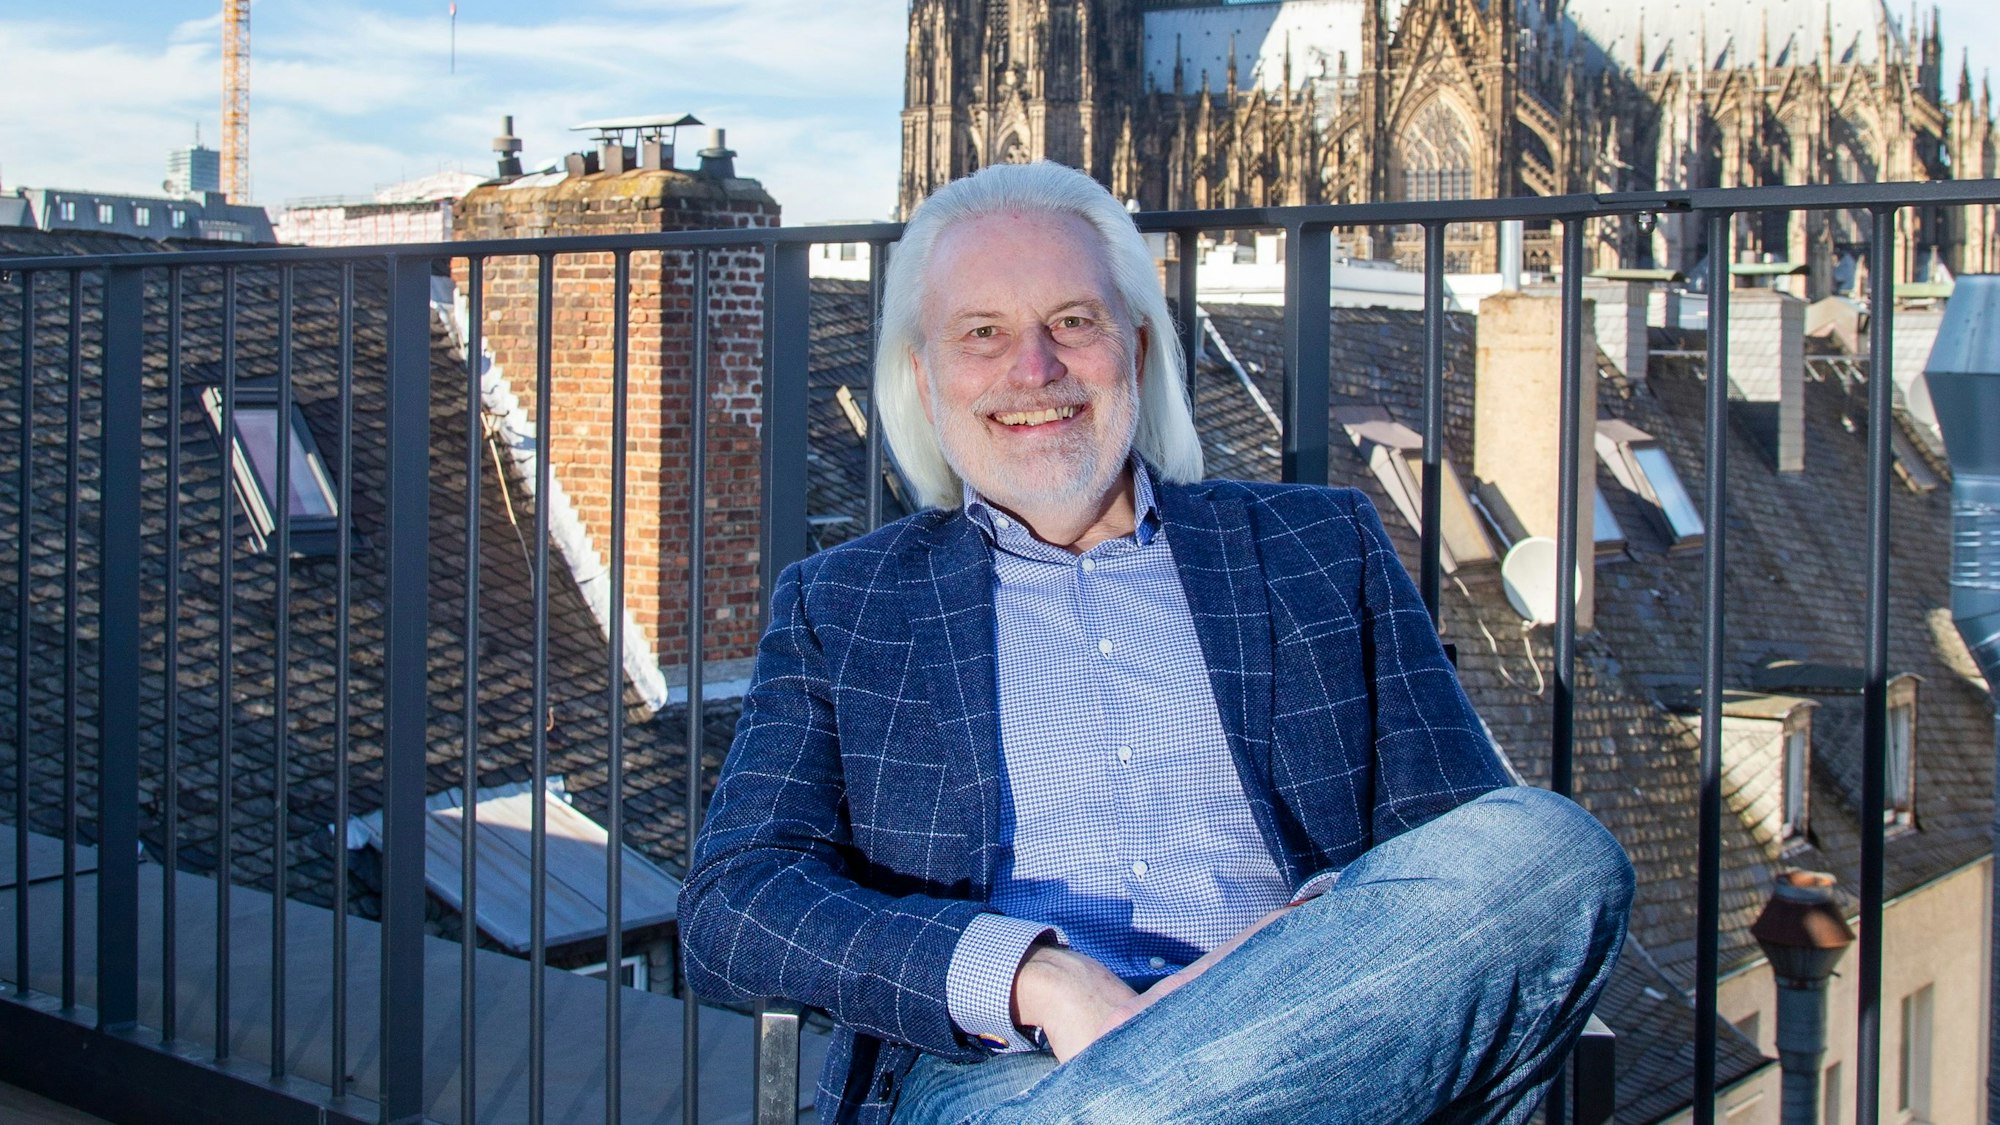 Dr. Joachim A. Groth,
Vorsitzender der Bürgergemeinschaft Altstadt
Verein zur Förderung einer lebenswerten Altstadt e.V.